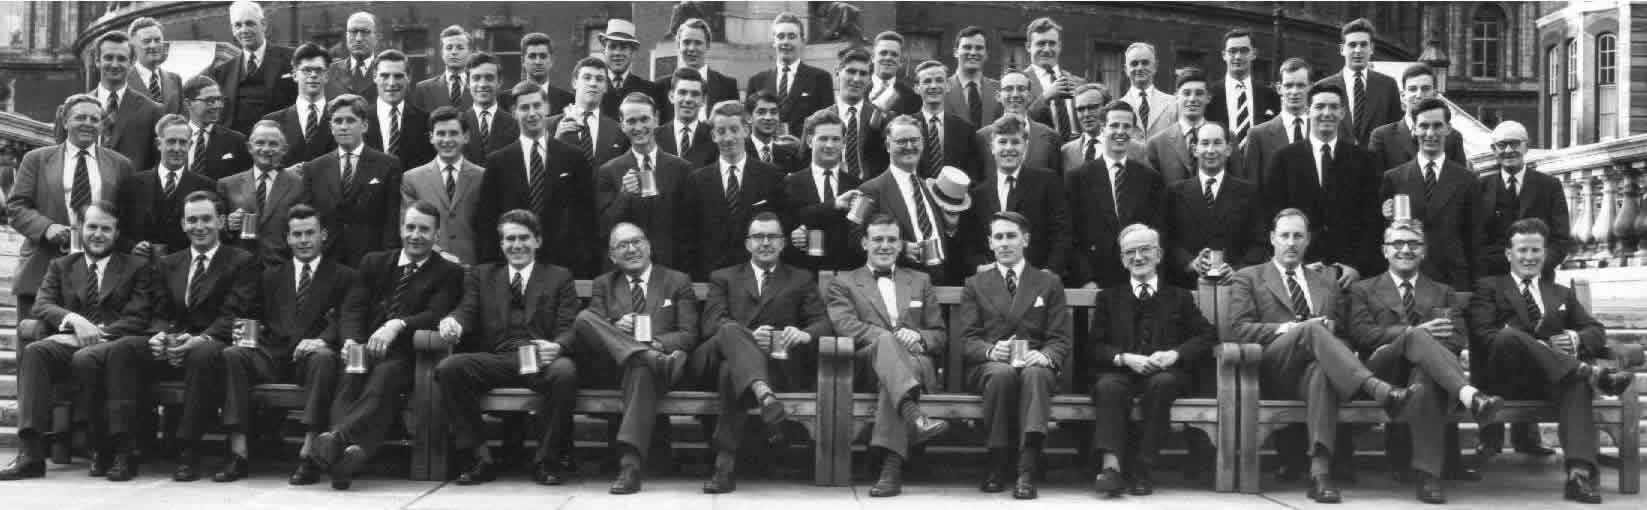 Chaps Club Derby Day 1959